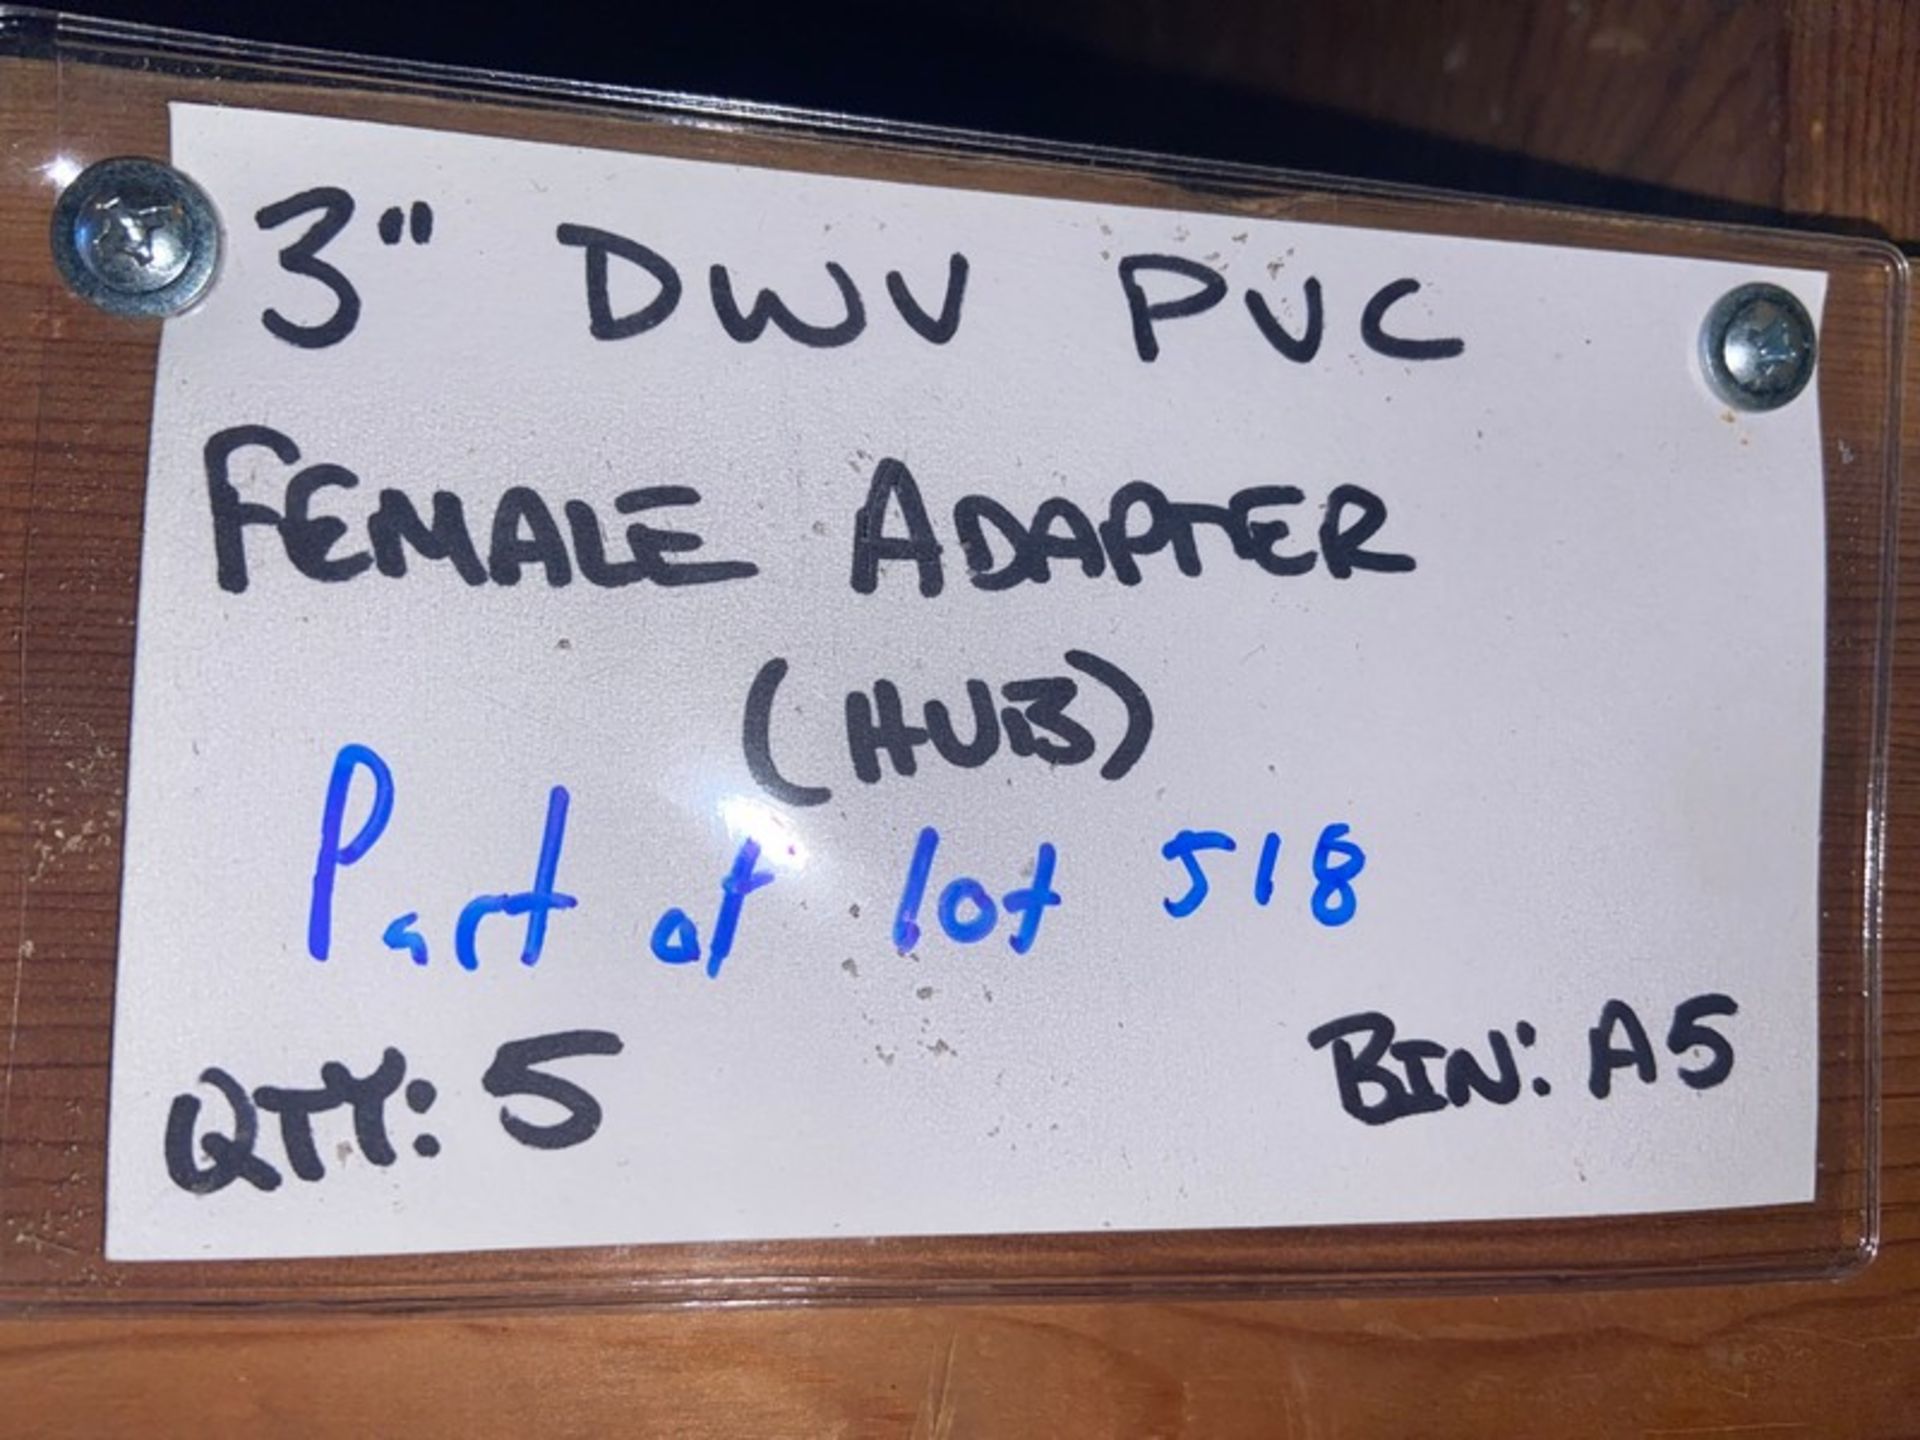 (3) 3” DWV PVC MALE ADAPTER (Bin: A5), Includes (7) 3” DWV PVC Female Adapter (STREET) (Bin:A5), - Image 9 of 11